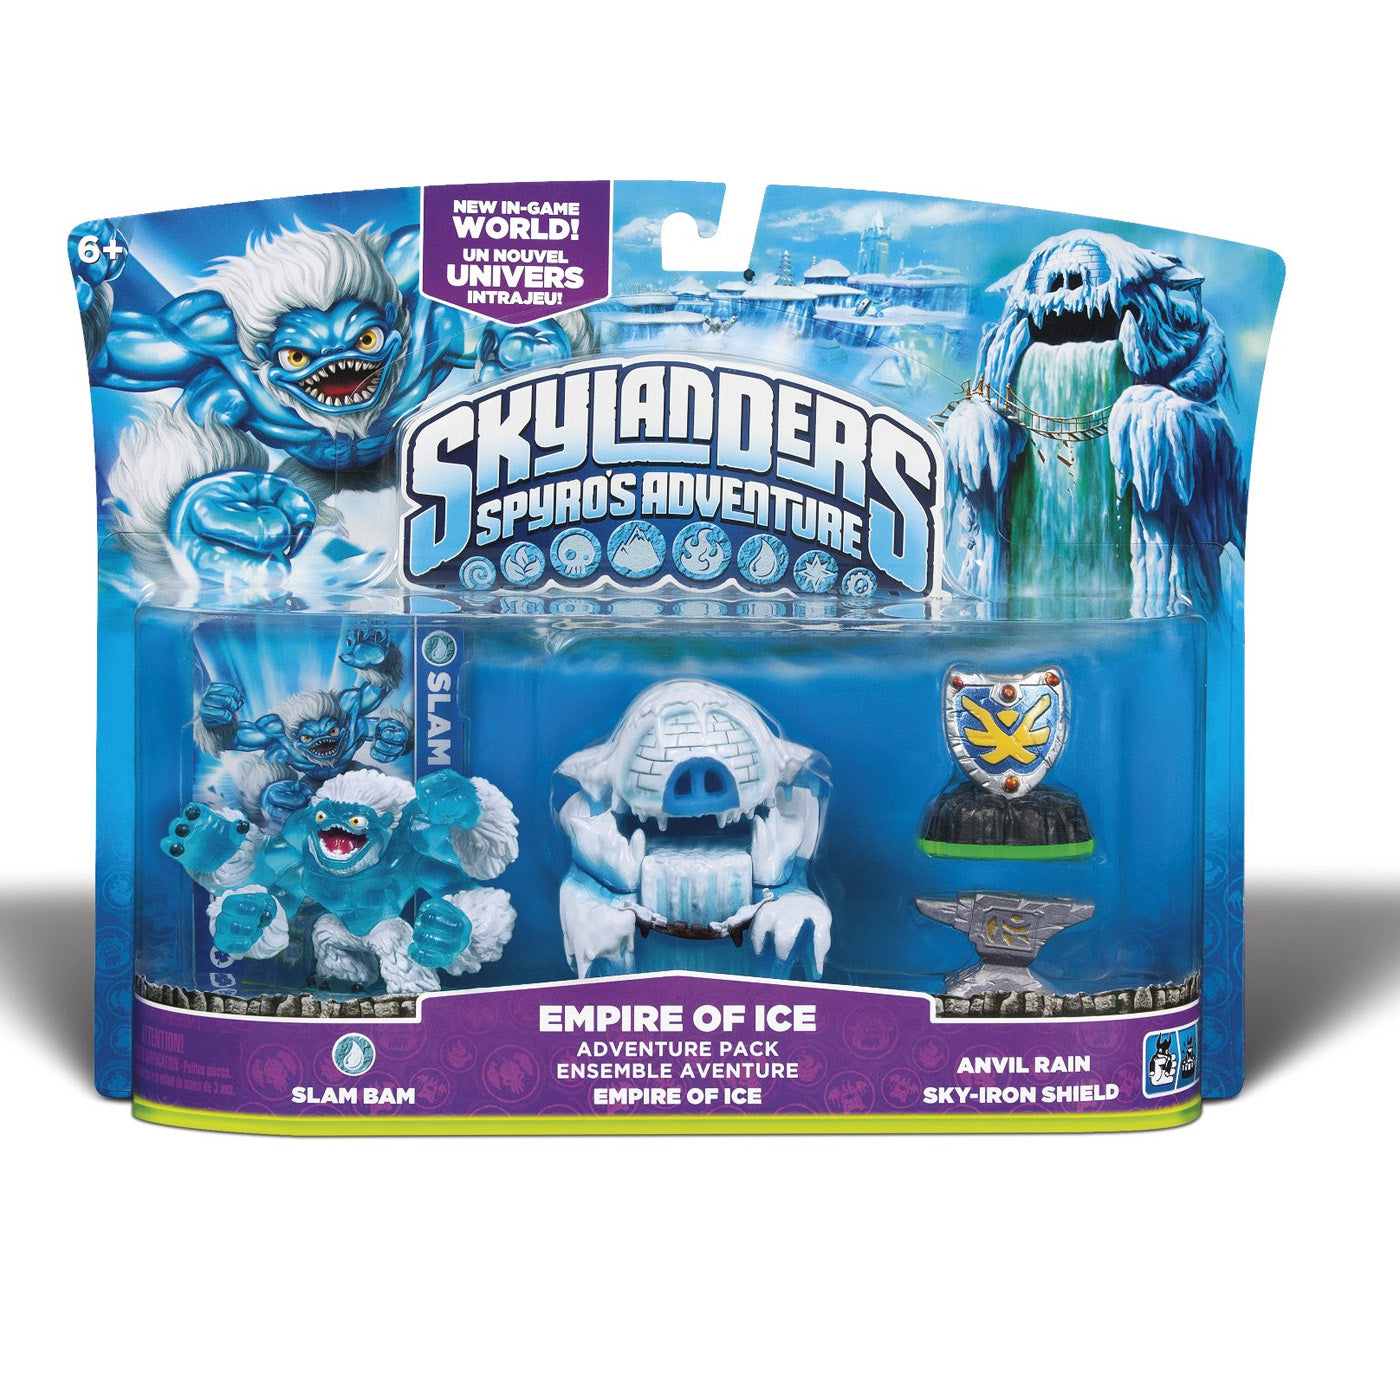 Skylanders Spyro's Adventure Pack: Empire of Ice